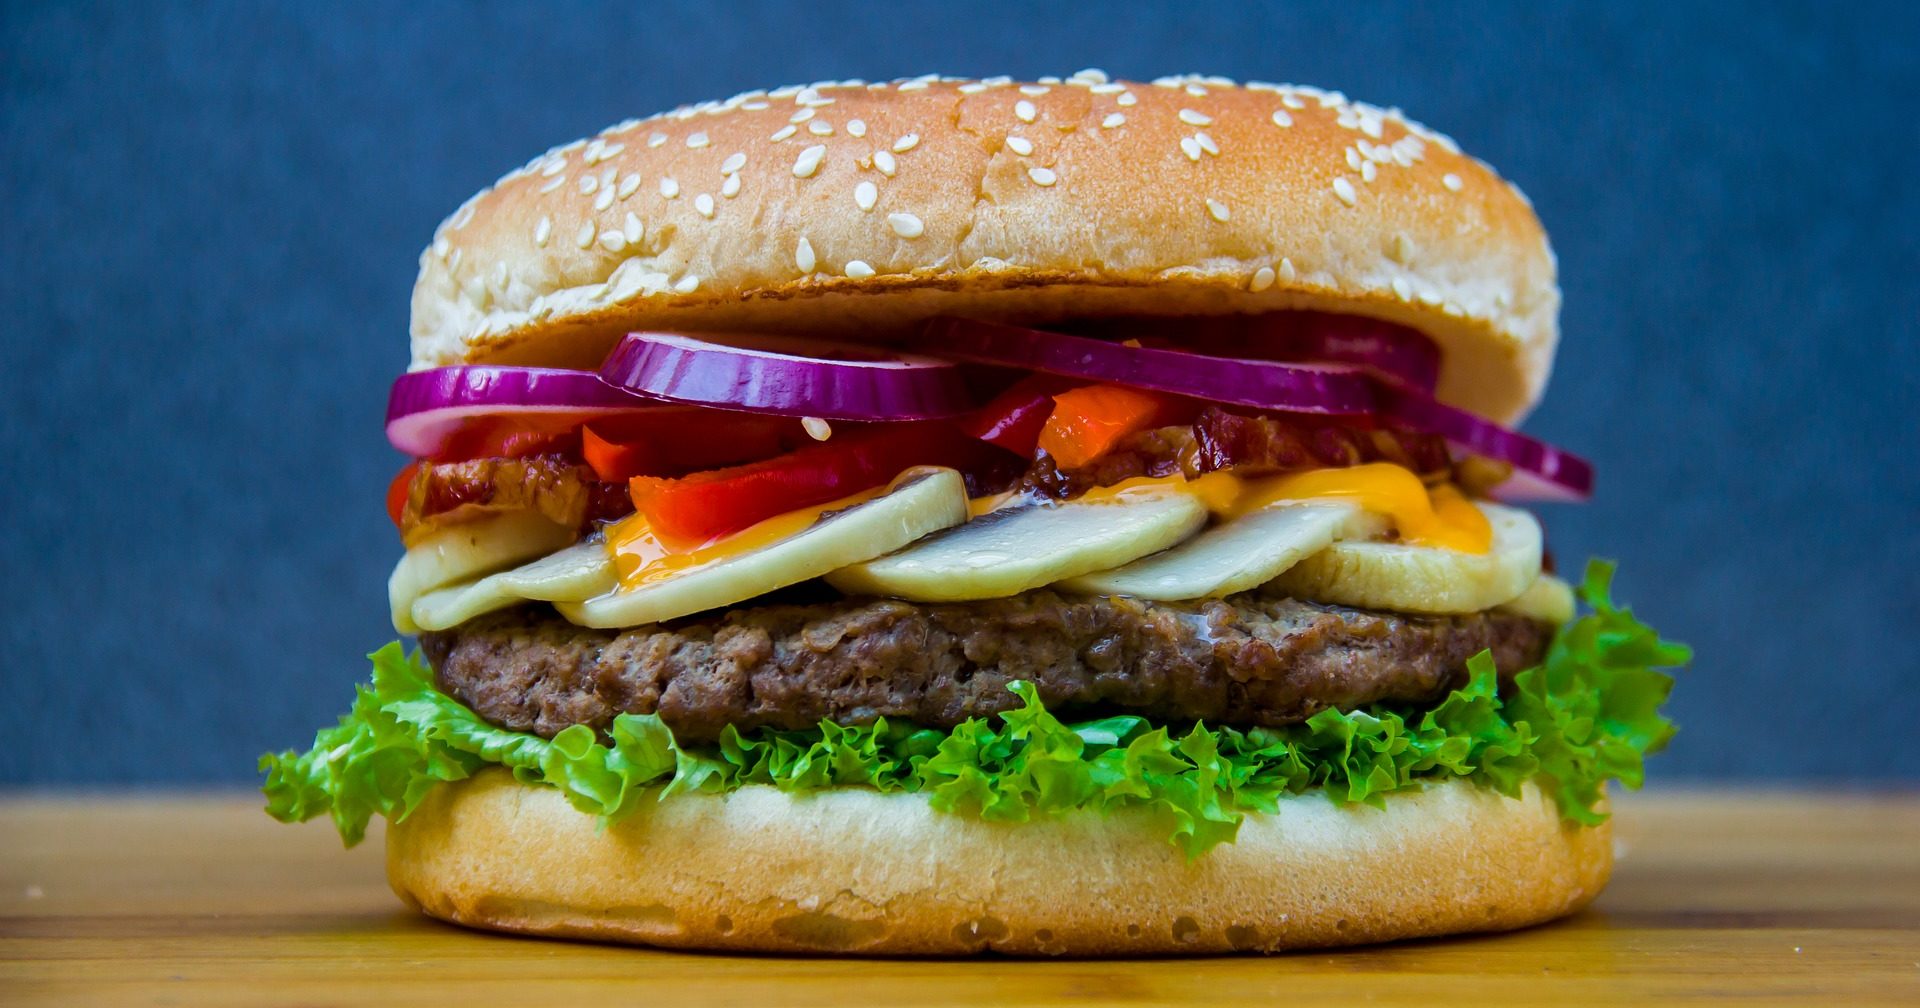 Burger, kurczak, frytki – zdrowe i smaczne